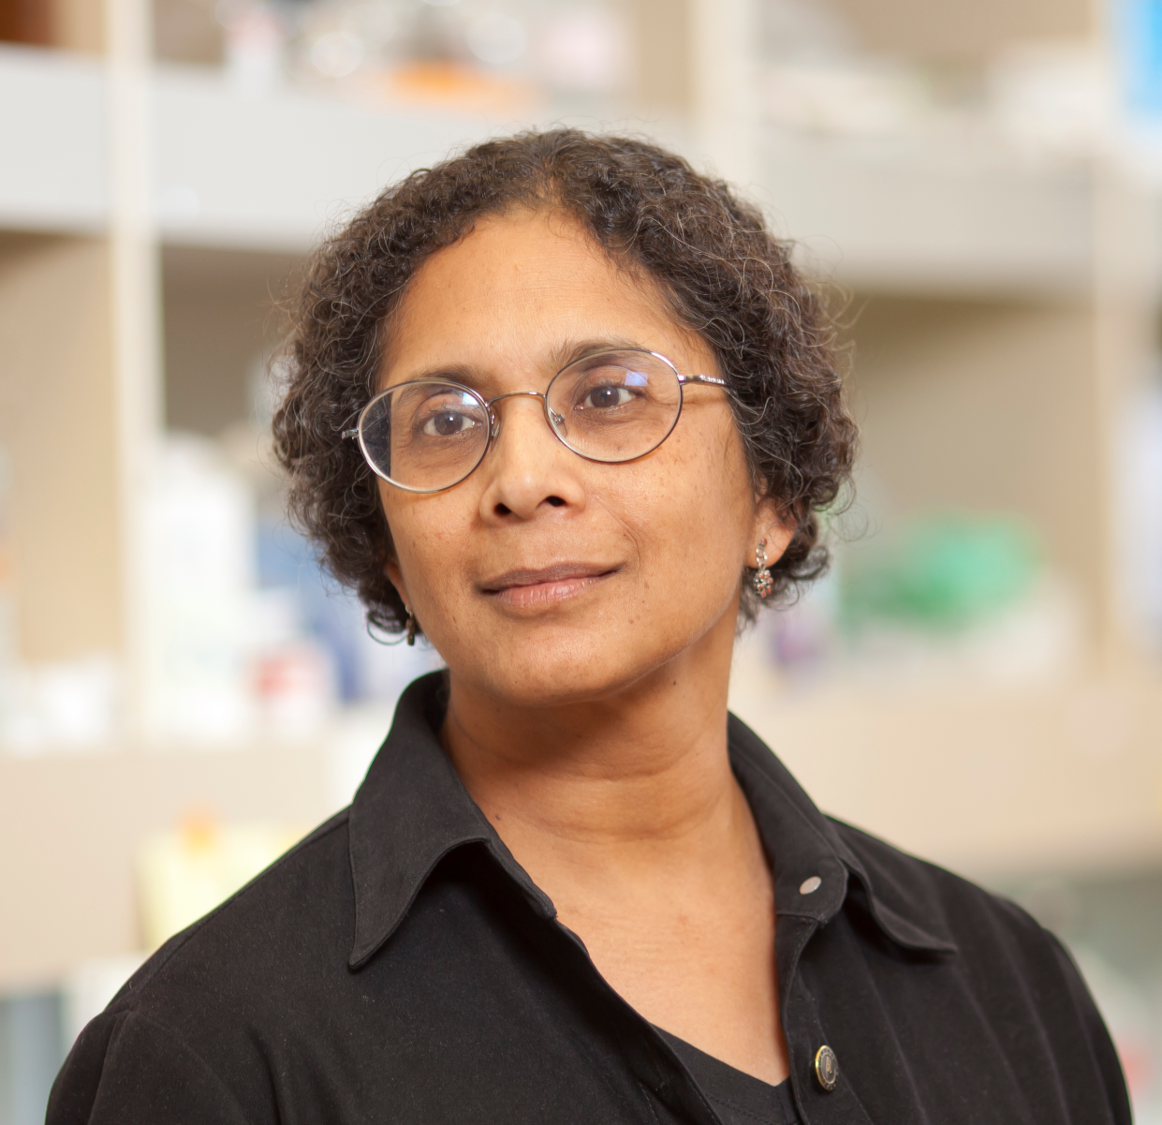 Dr. Anjana Rao obtained her Ph.D